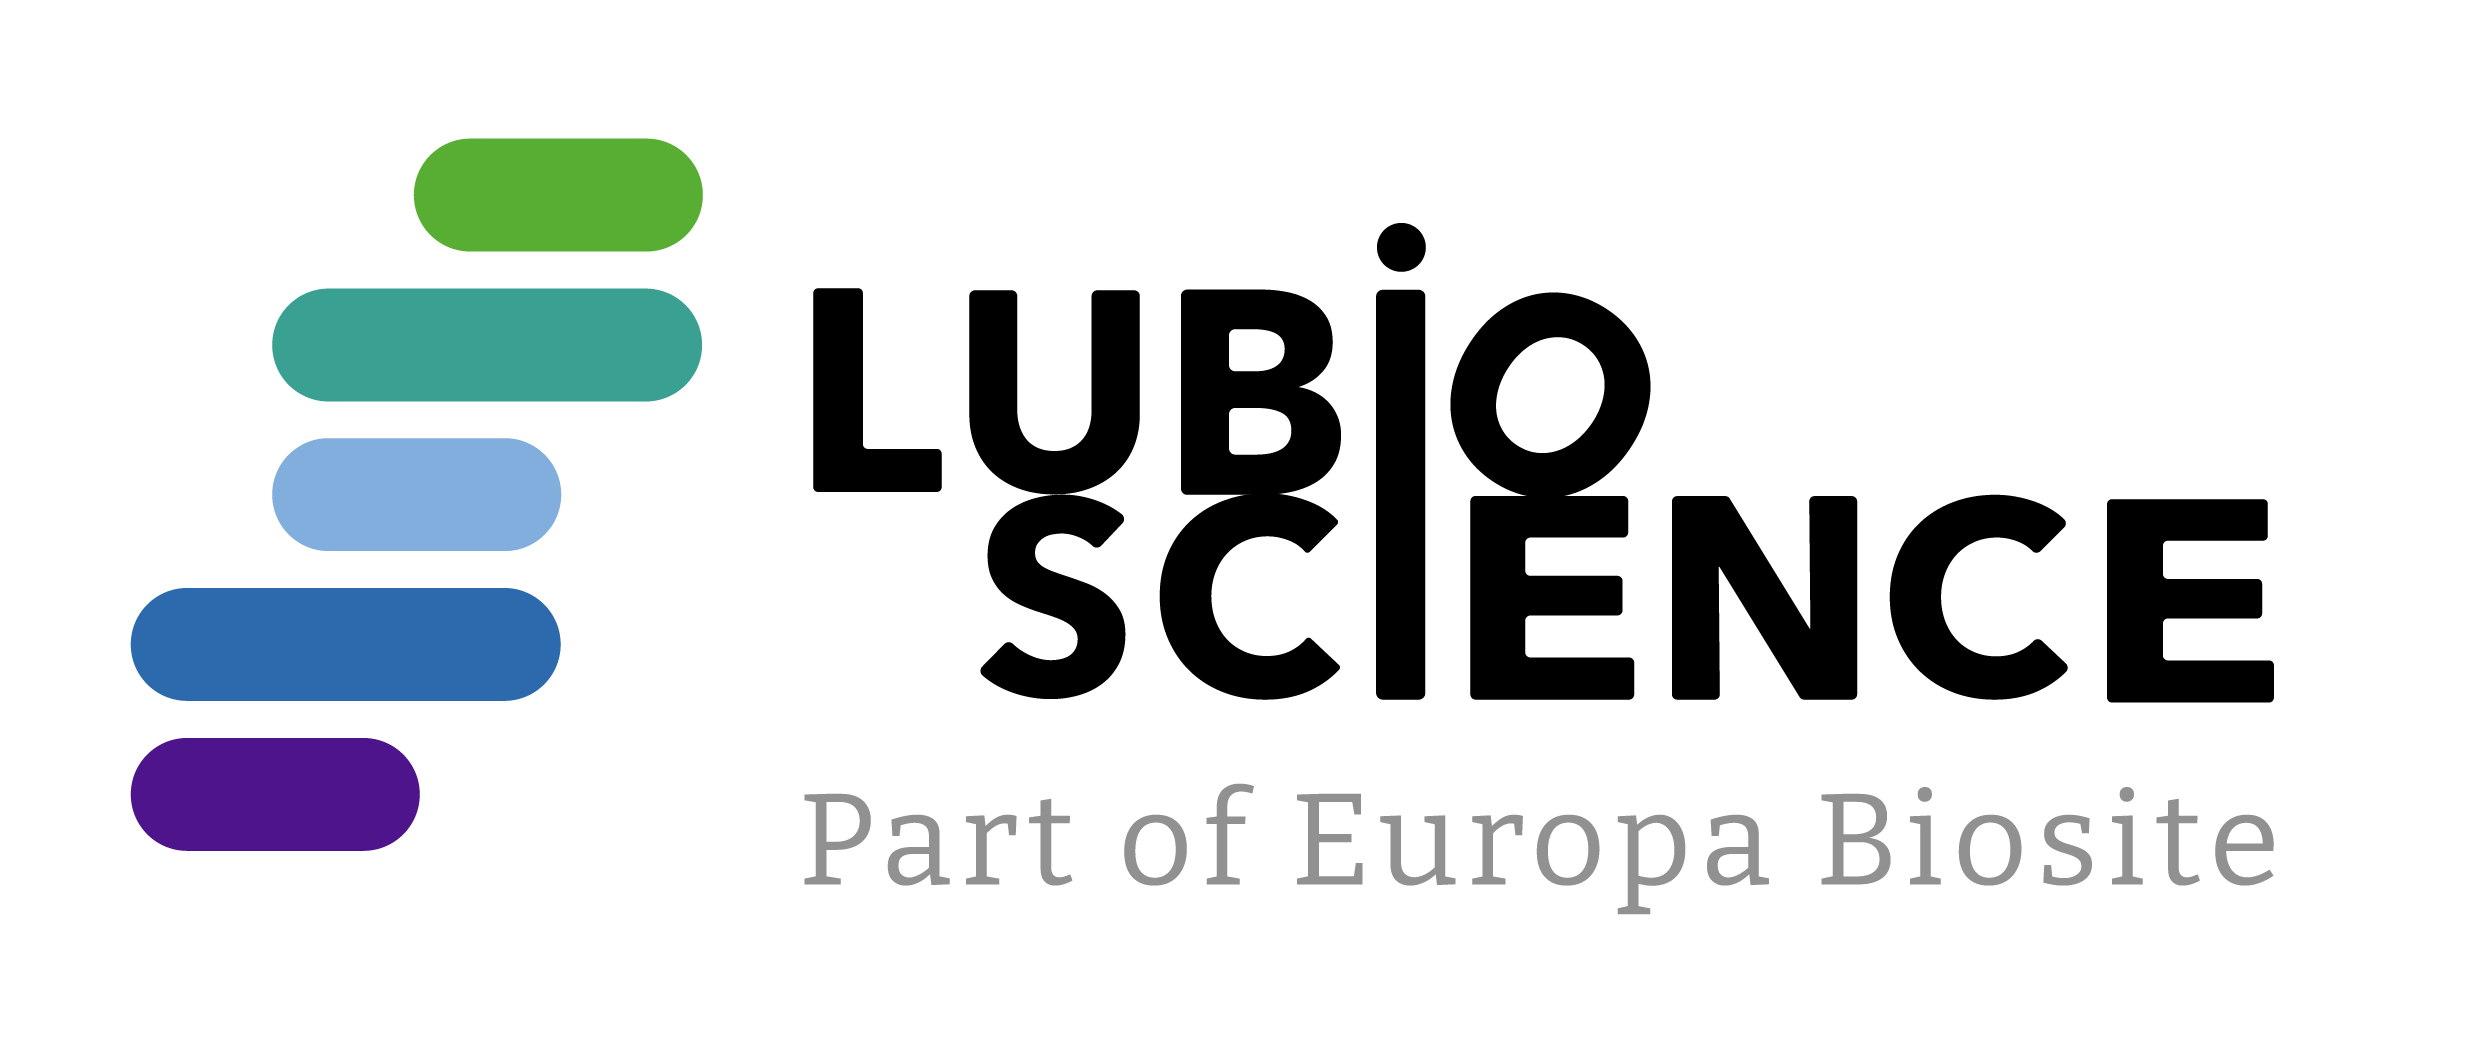 LubioScience logo new LubioScience logo new LubioScience logo new